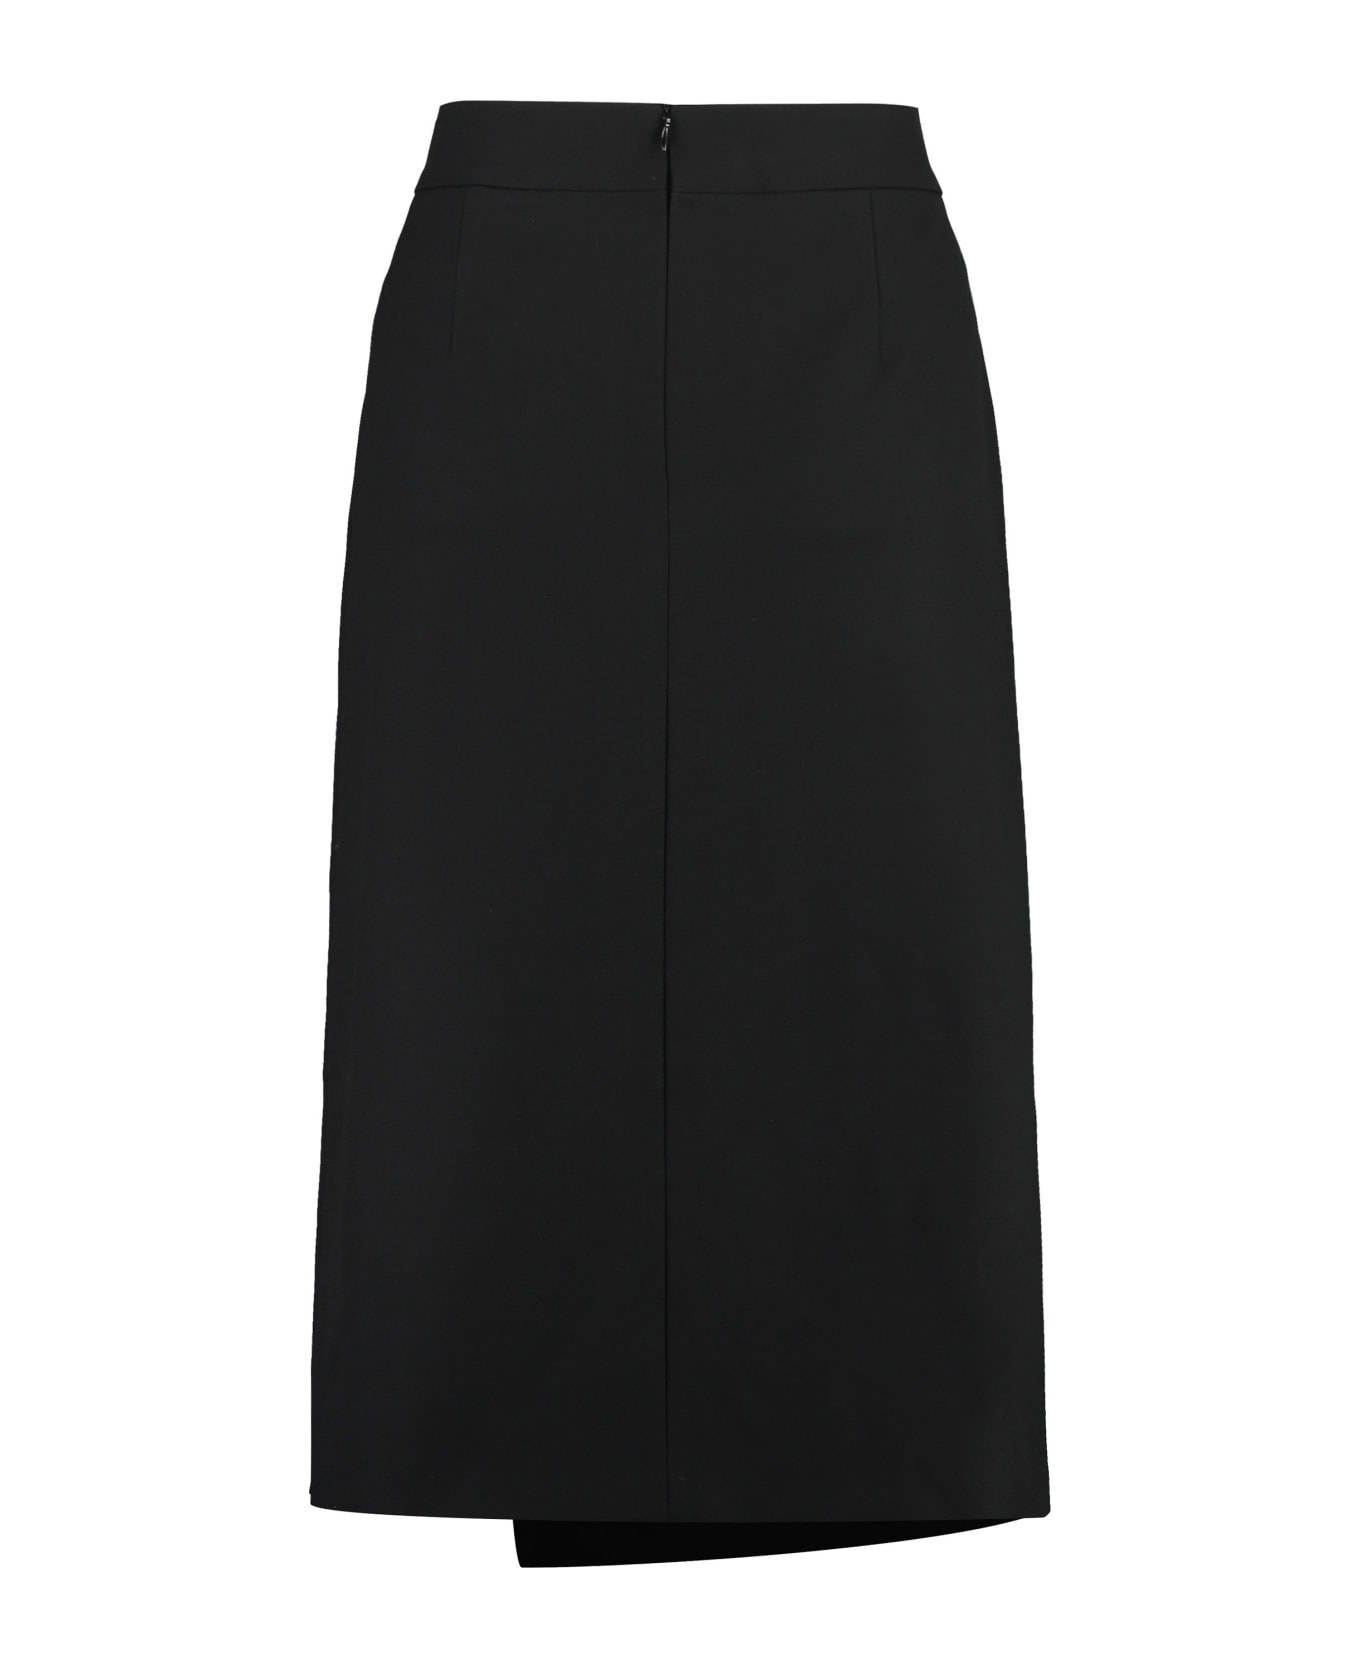 Hugo Boss A-line Skirt - black